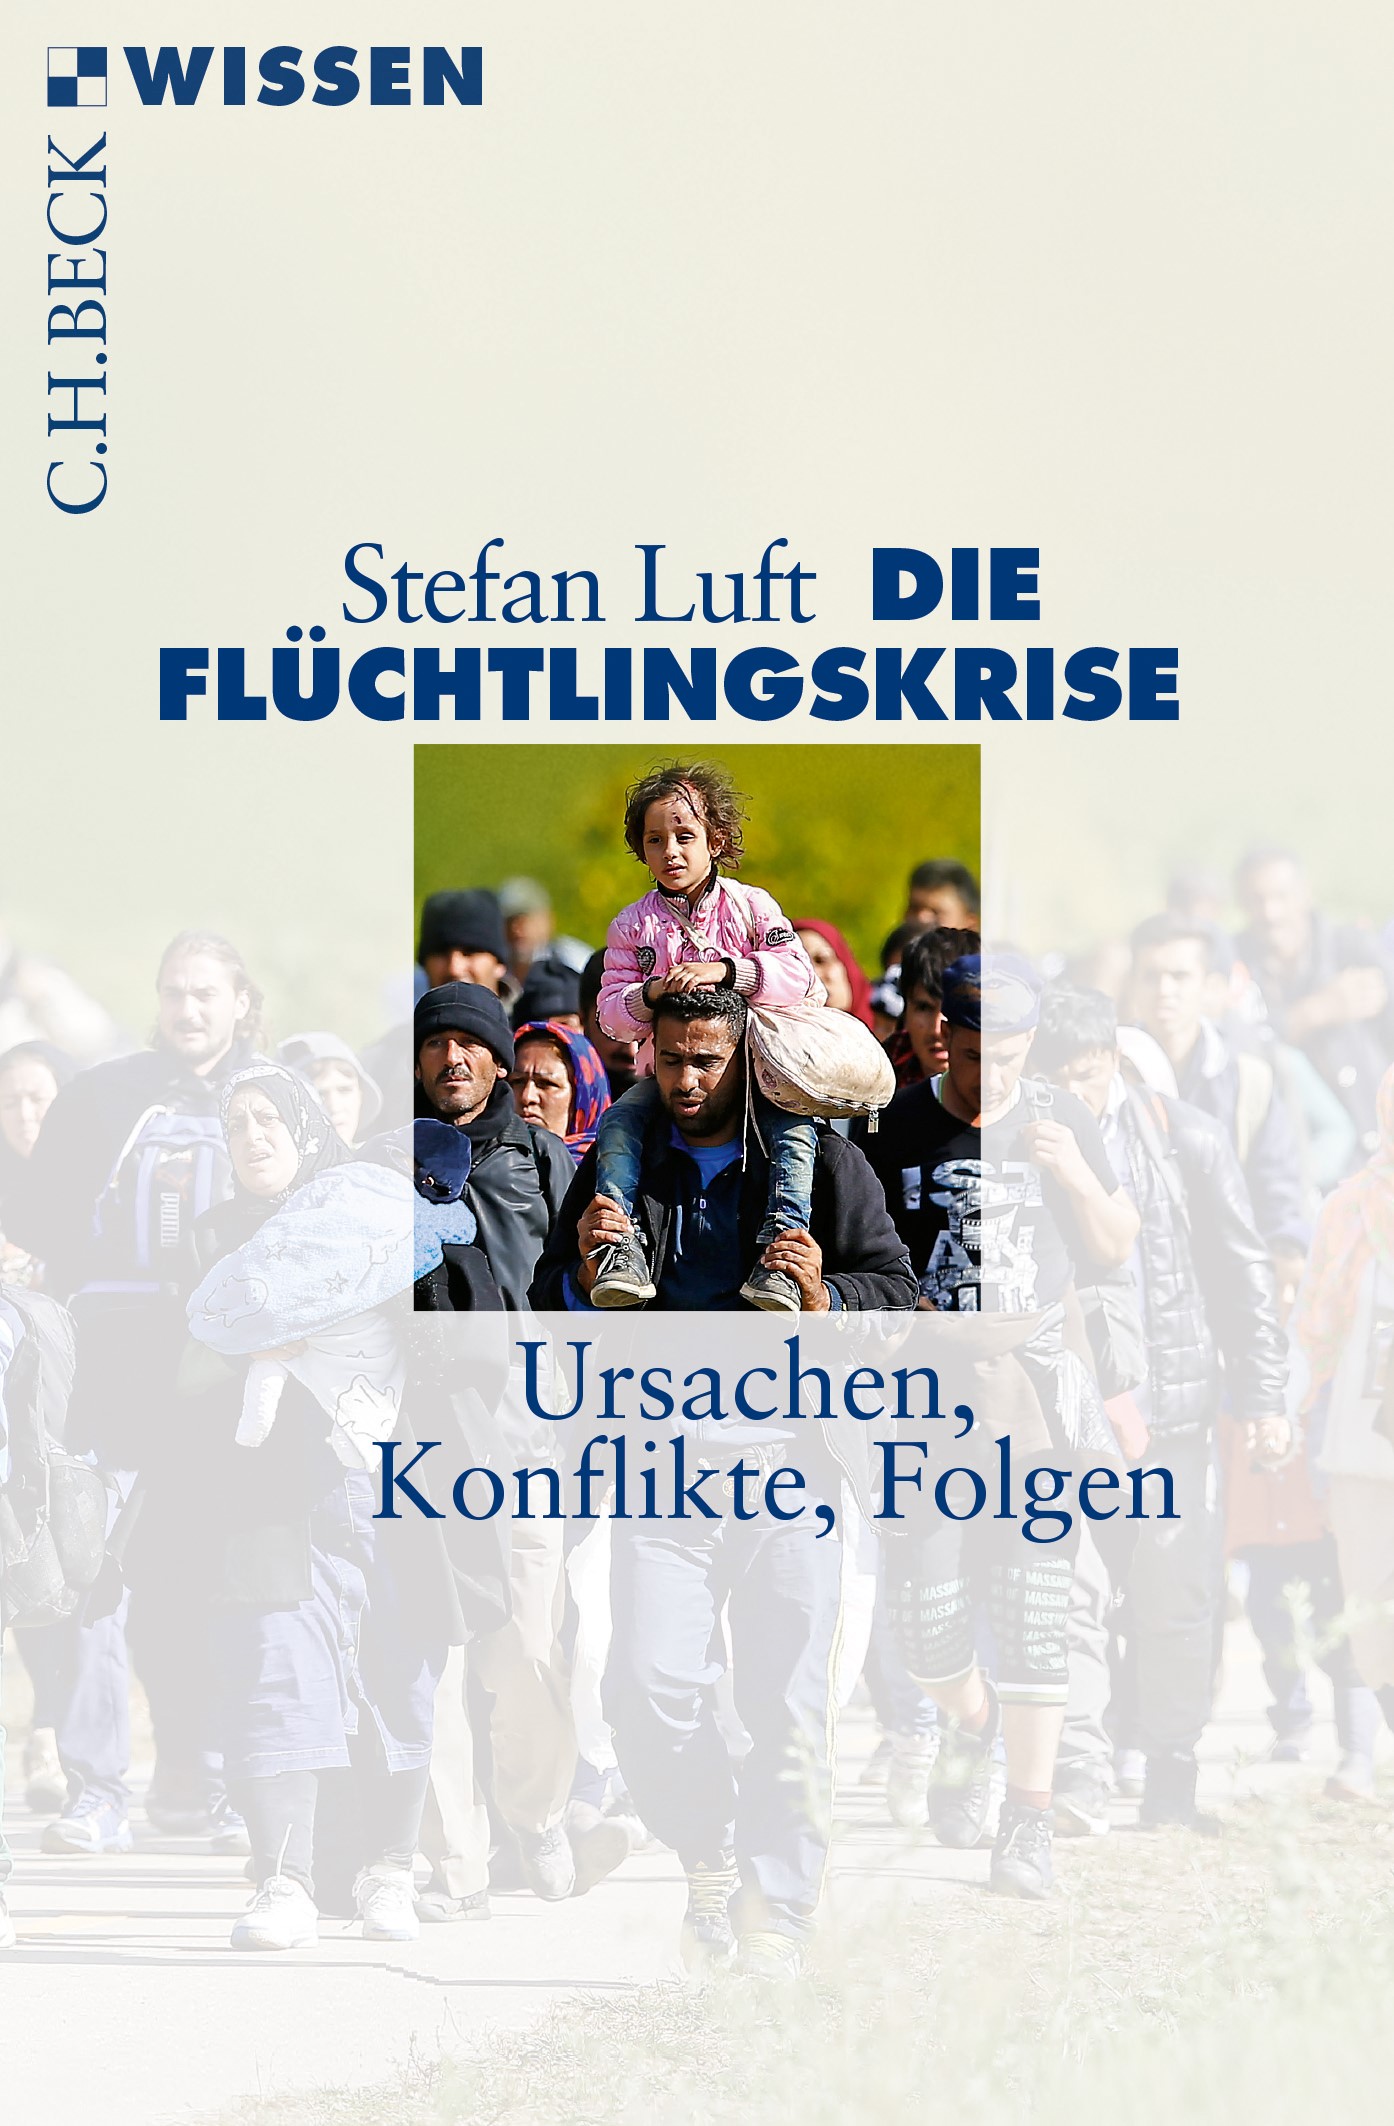 Cover: Luft, Stefan, Die Flüchtlingskrise